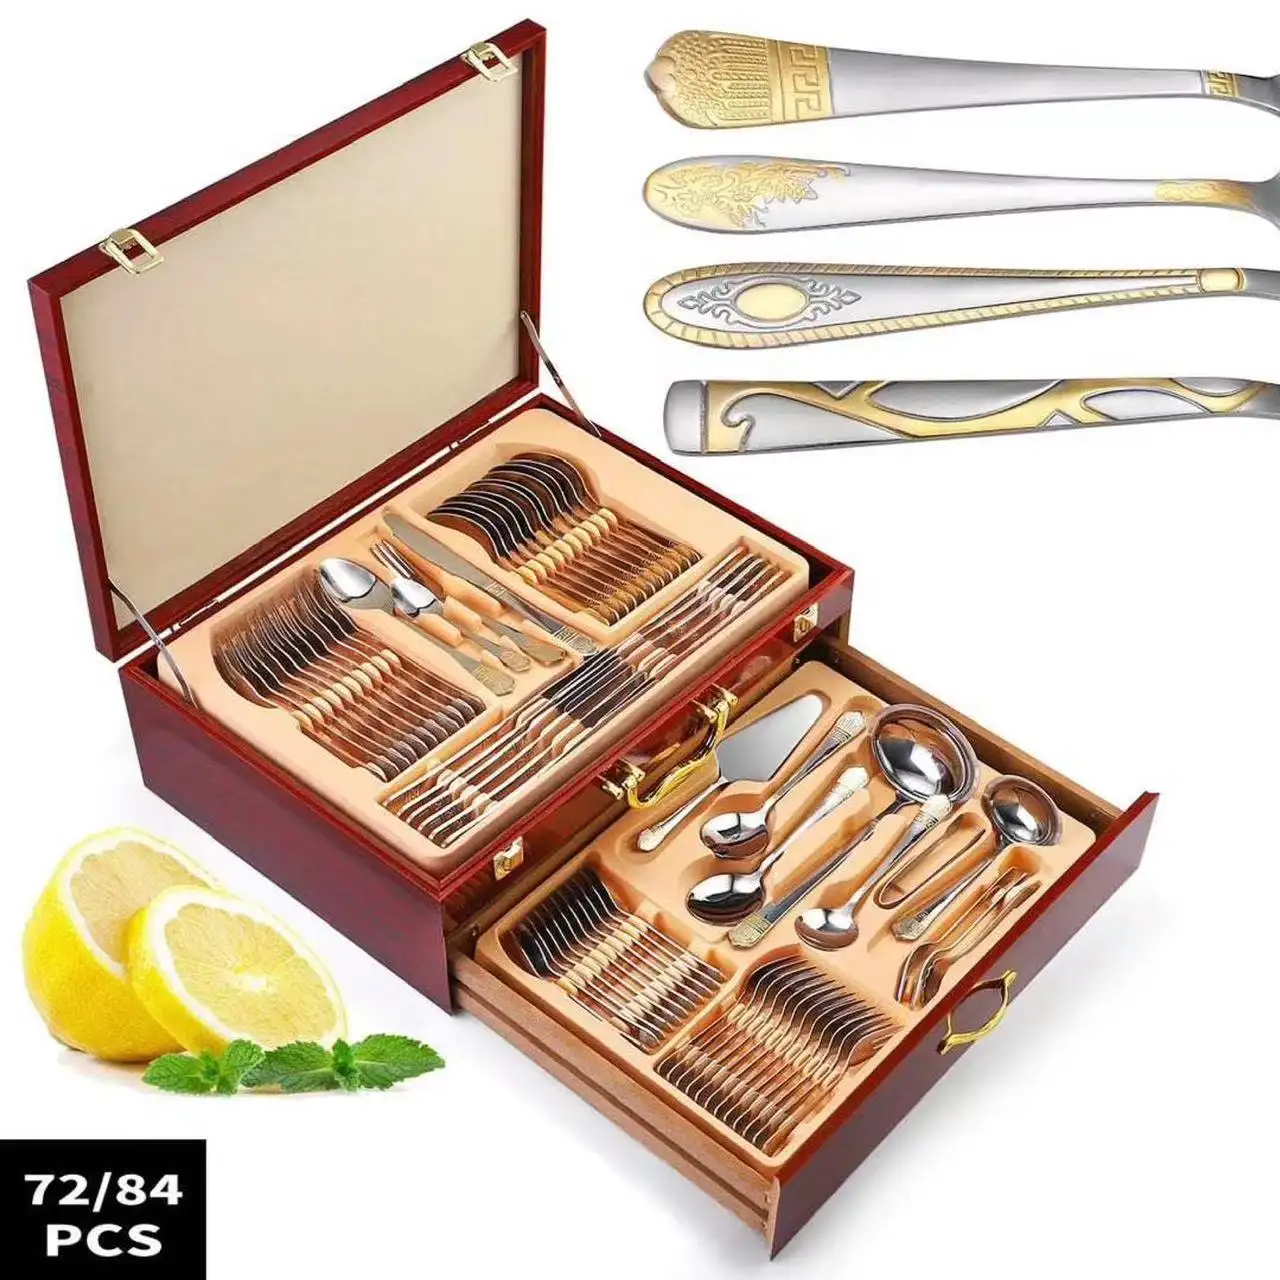 Royal Crown Juego de Cubiertos de acero inoxidable con caja de regalo de madera, cuchillo, tenedor, cuchara, 72 /84 piezas